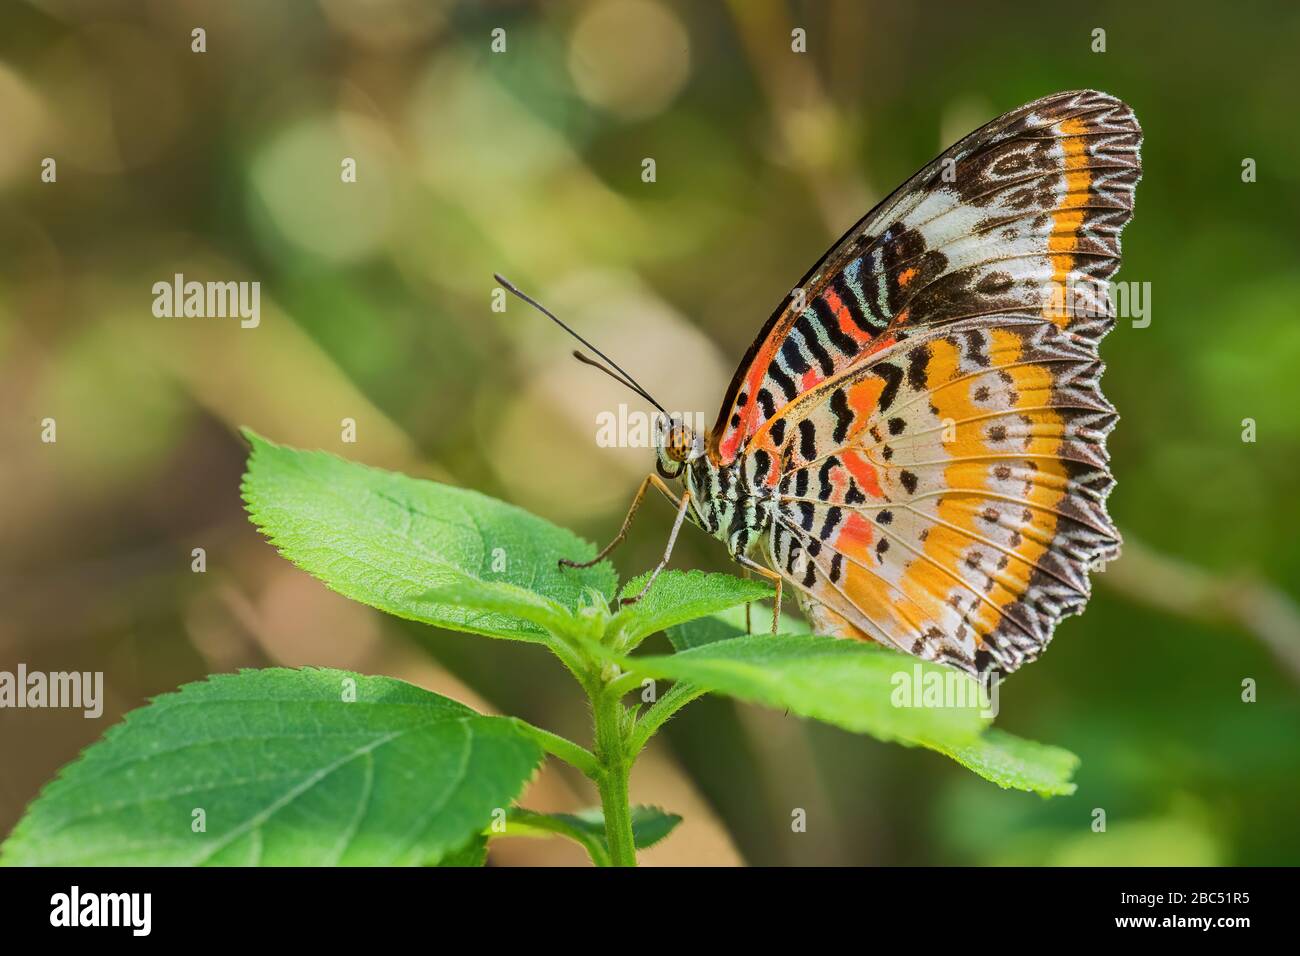 Léopard Lacwing - Cethosia cyane, beau papillon orange et rouge des forêts d'Asie de l'est, Malaisie. Banque D'Images